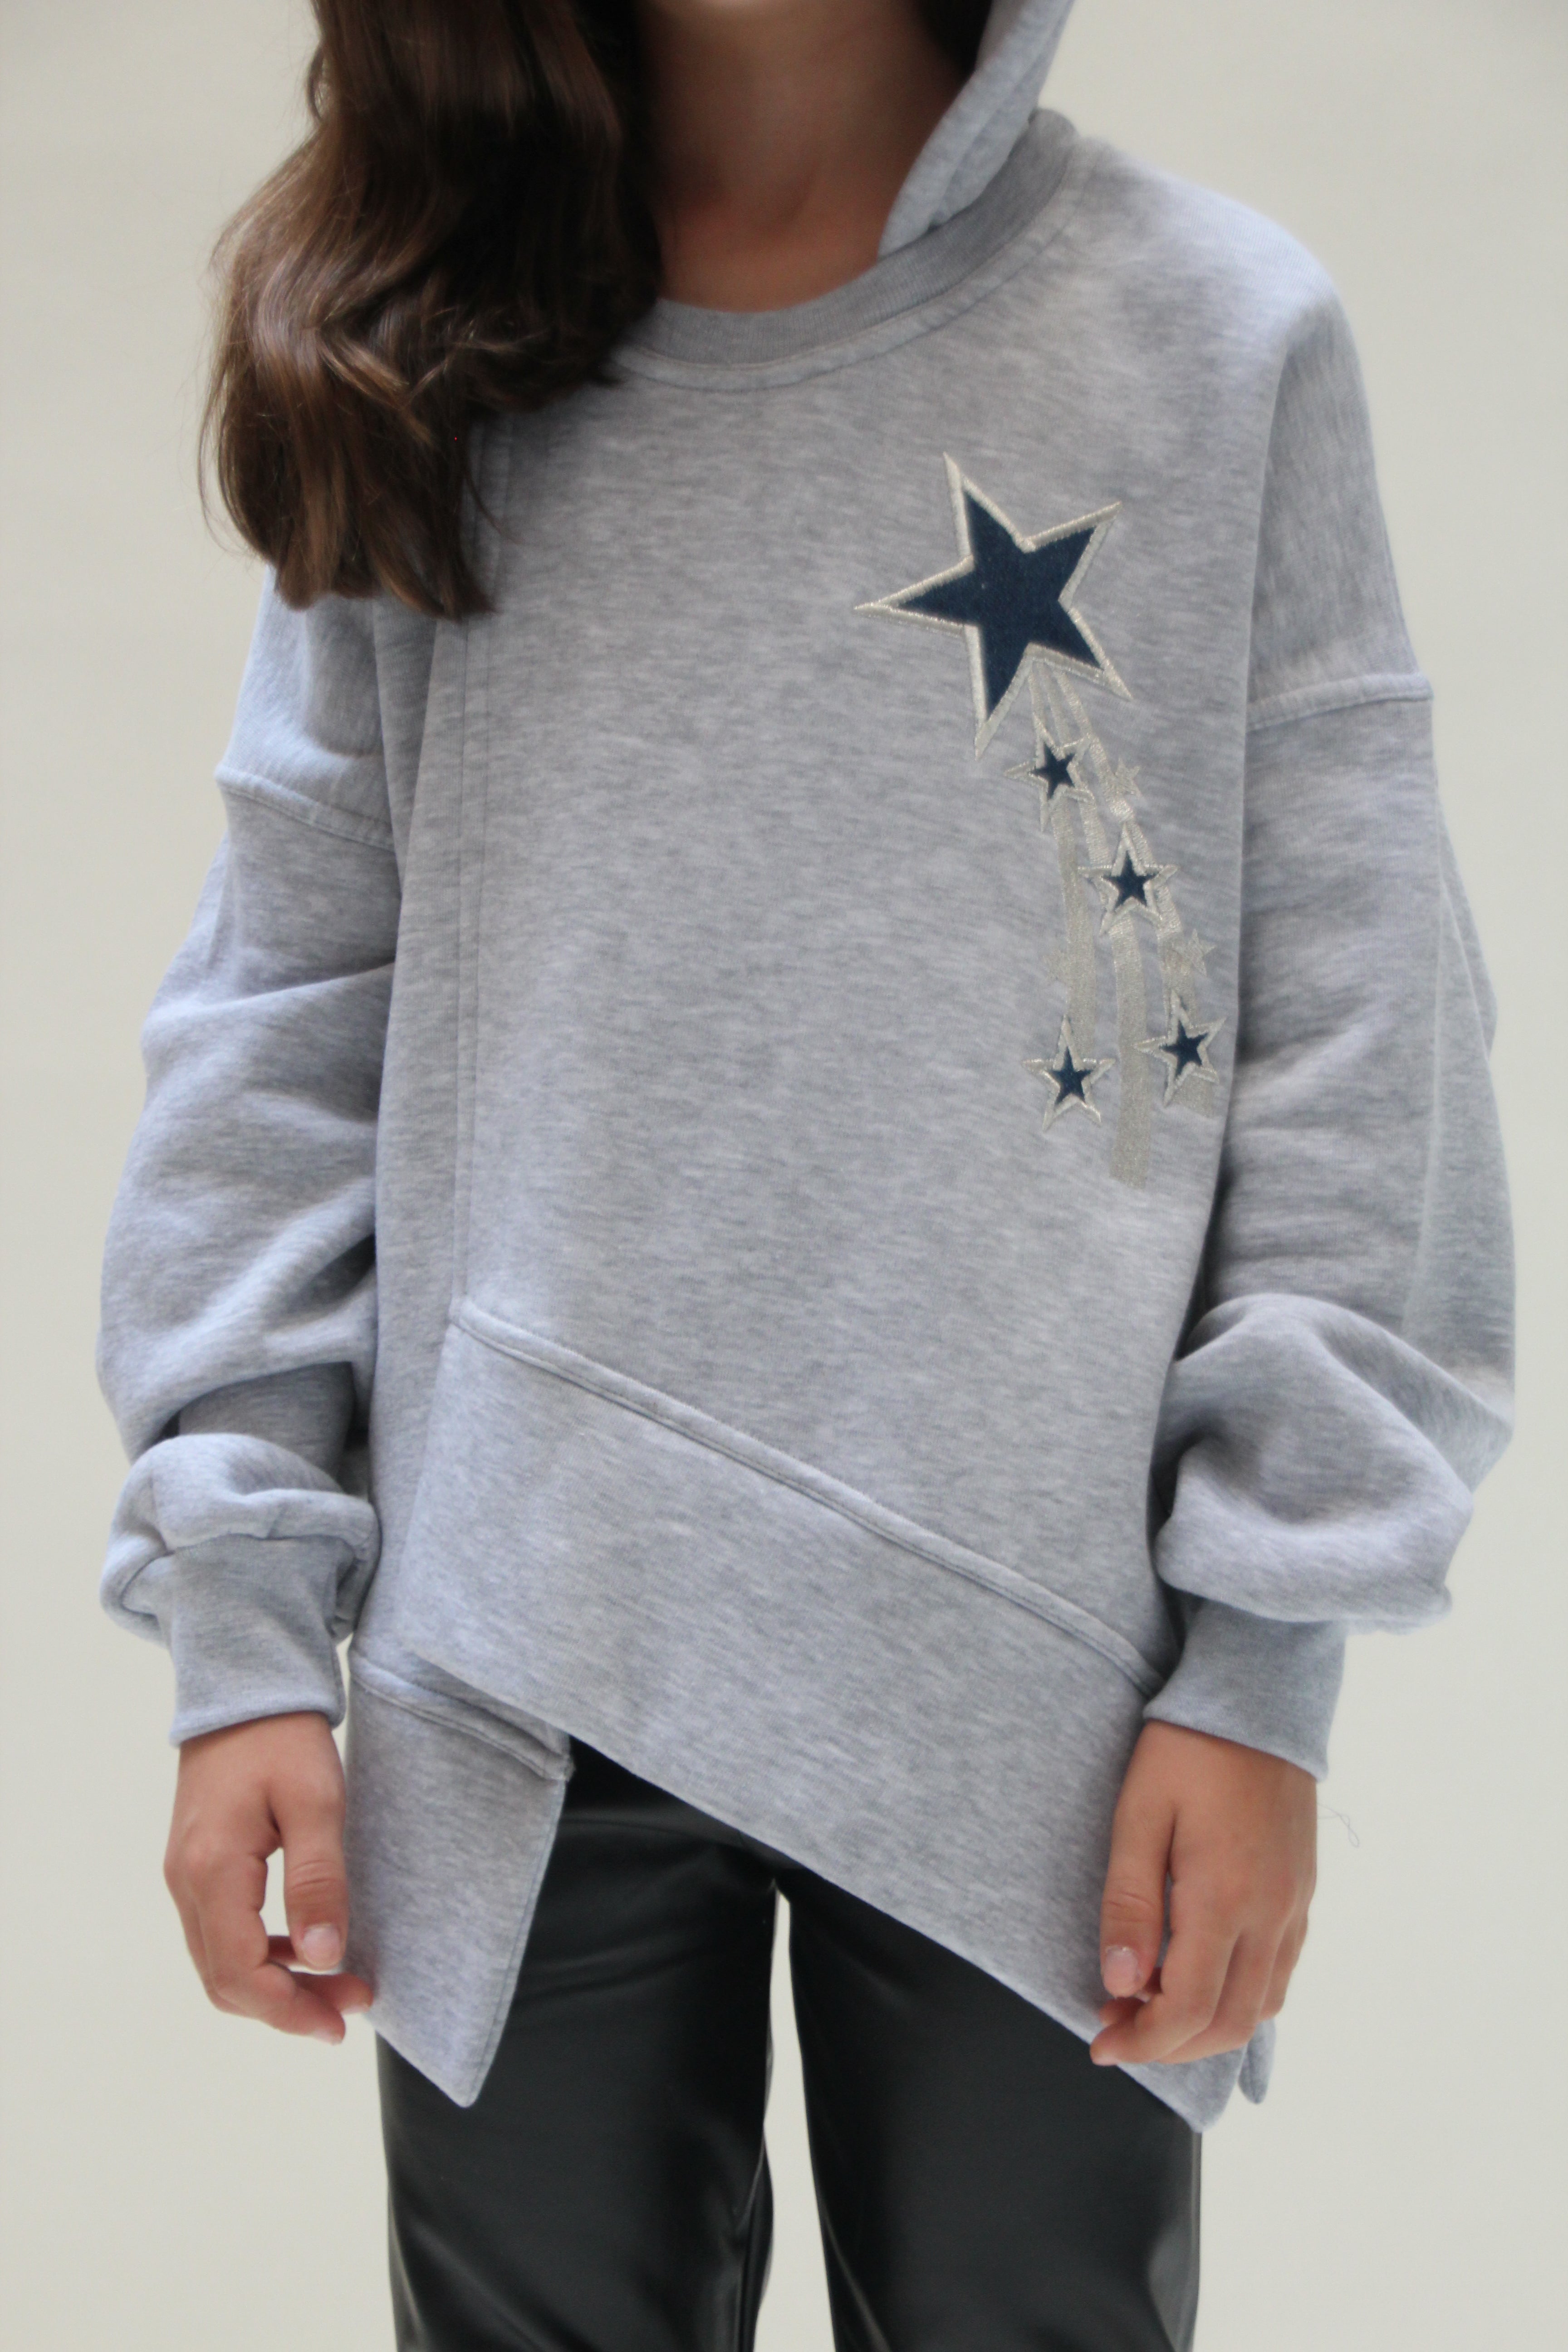 Asymmetrical Sweatshirt For Girls - Grey